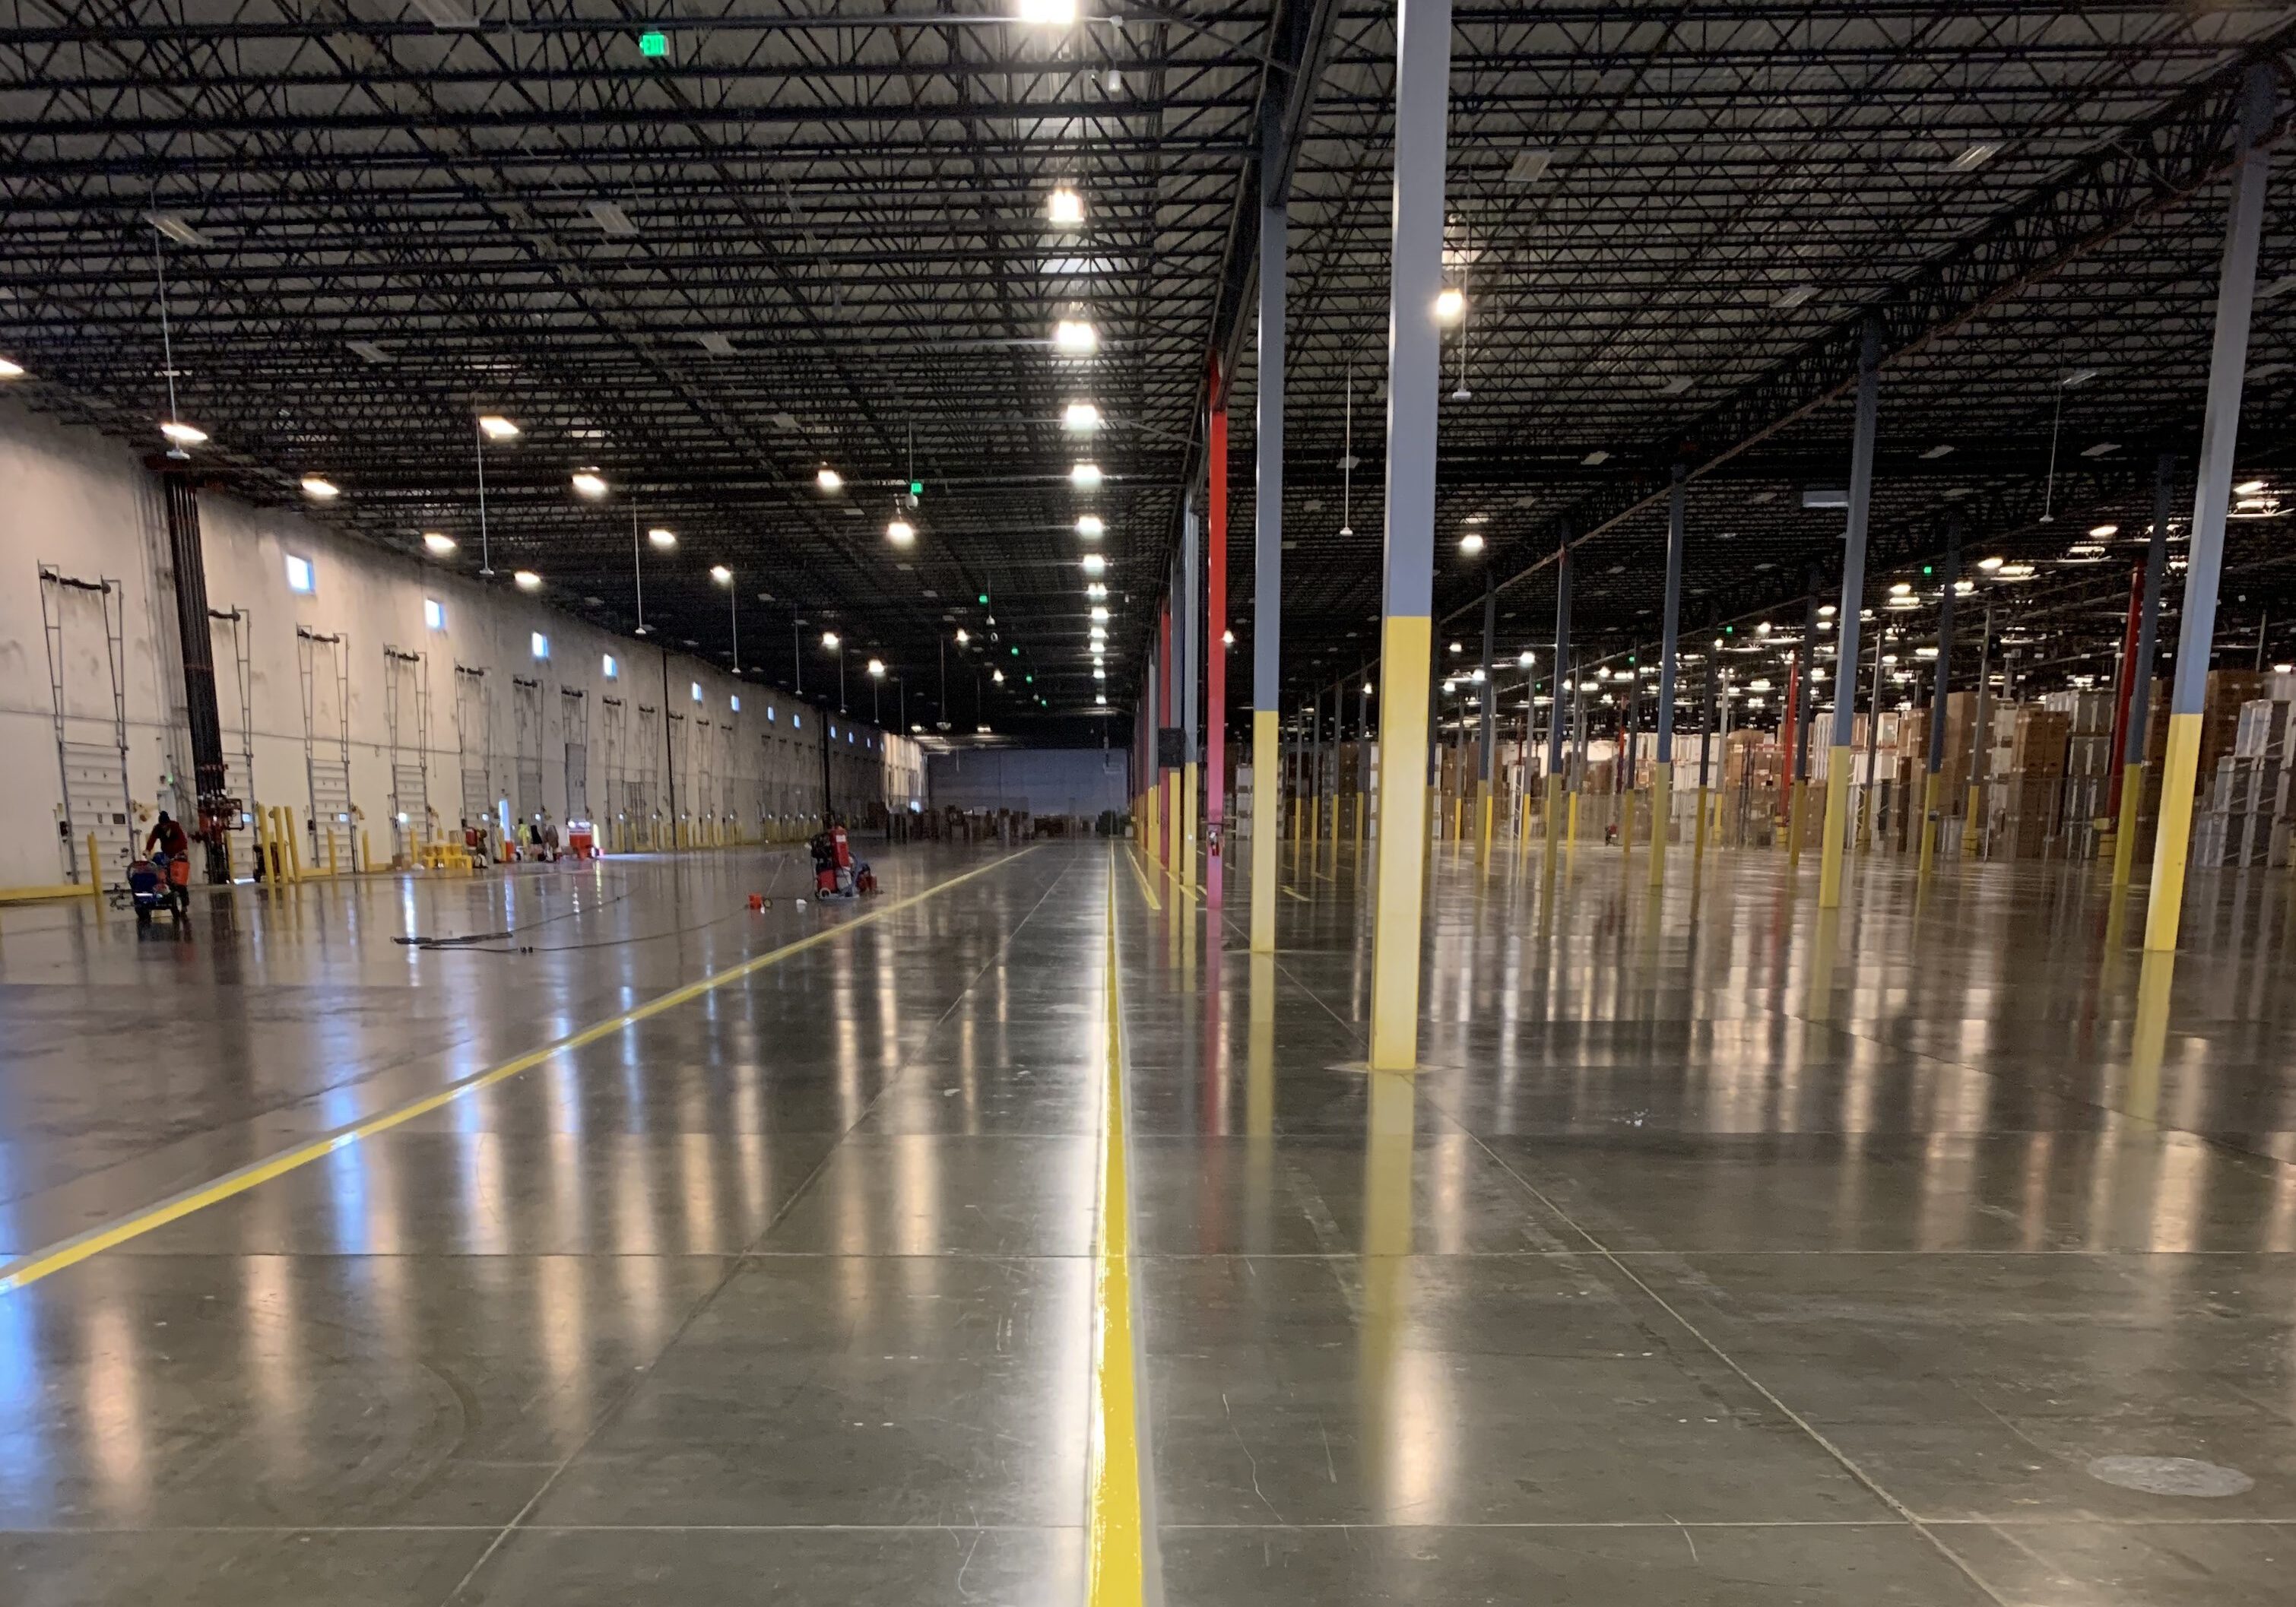 Denver, Colorado. Colorado Concrete Repair line striping in warehouse